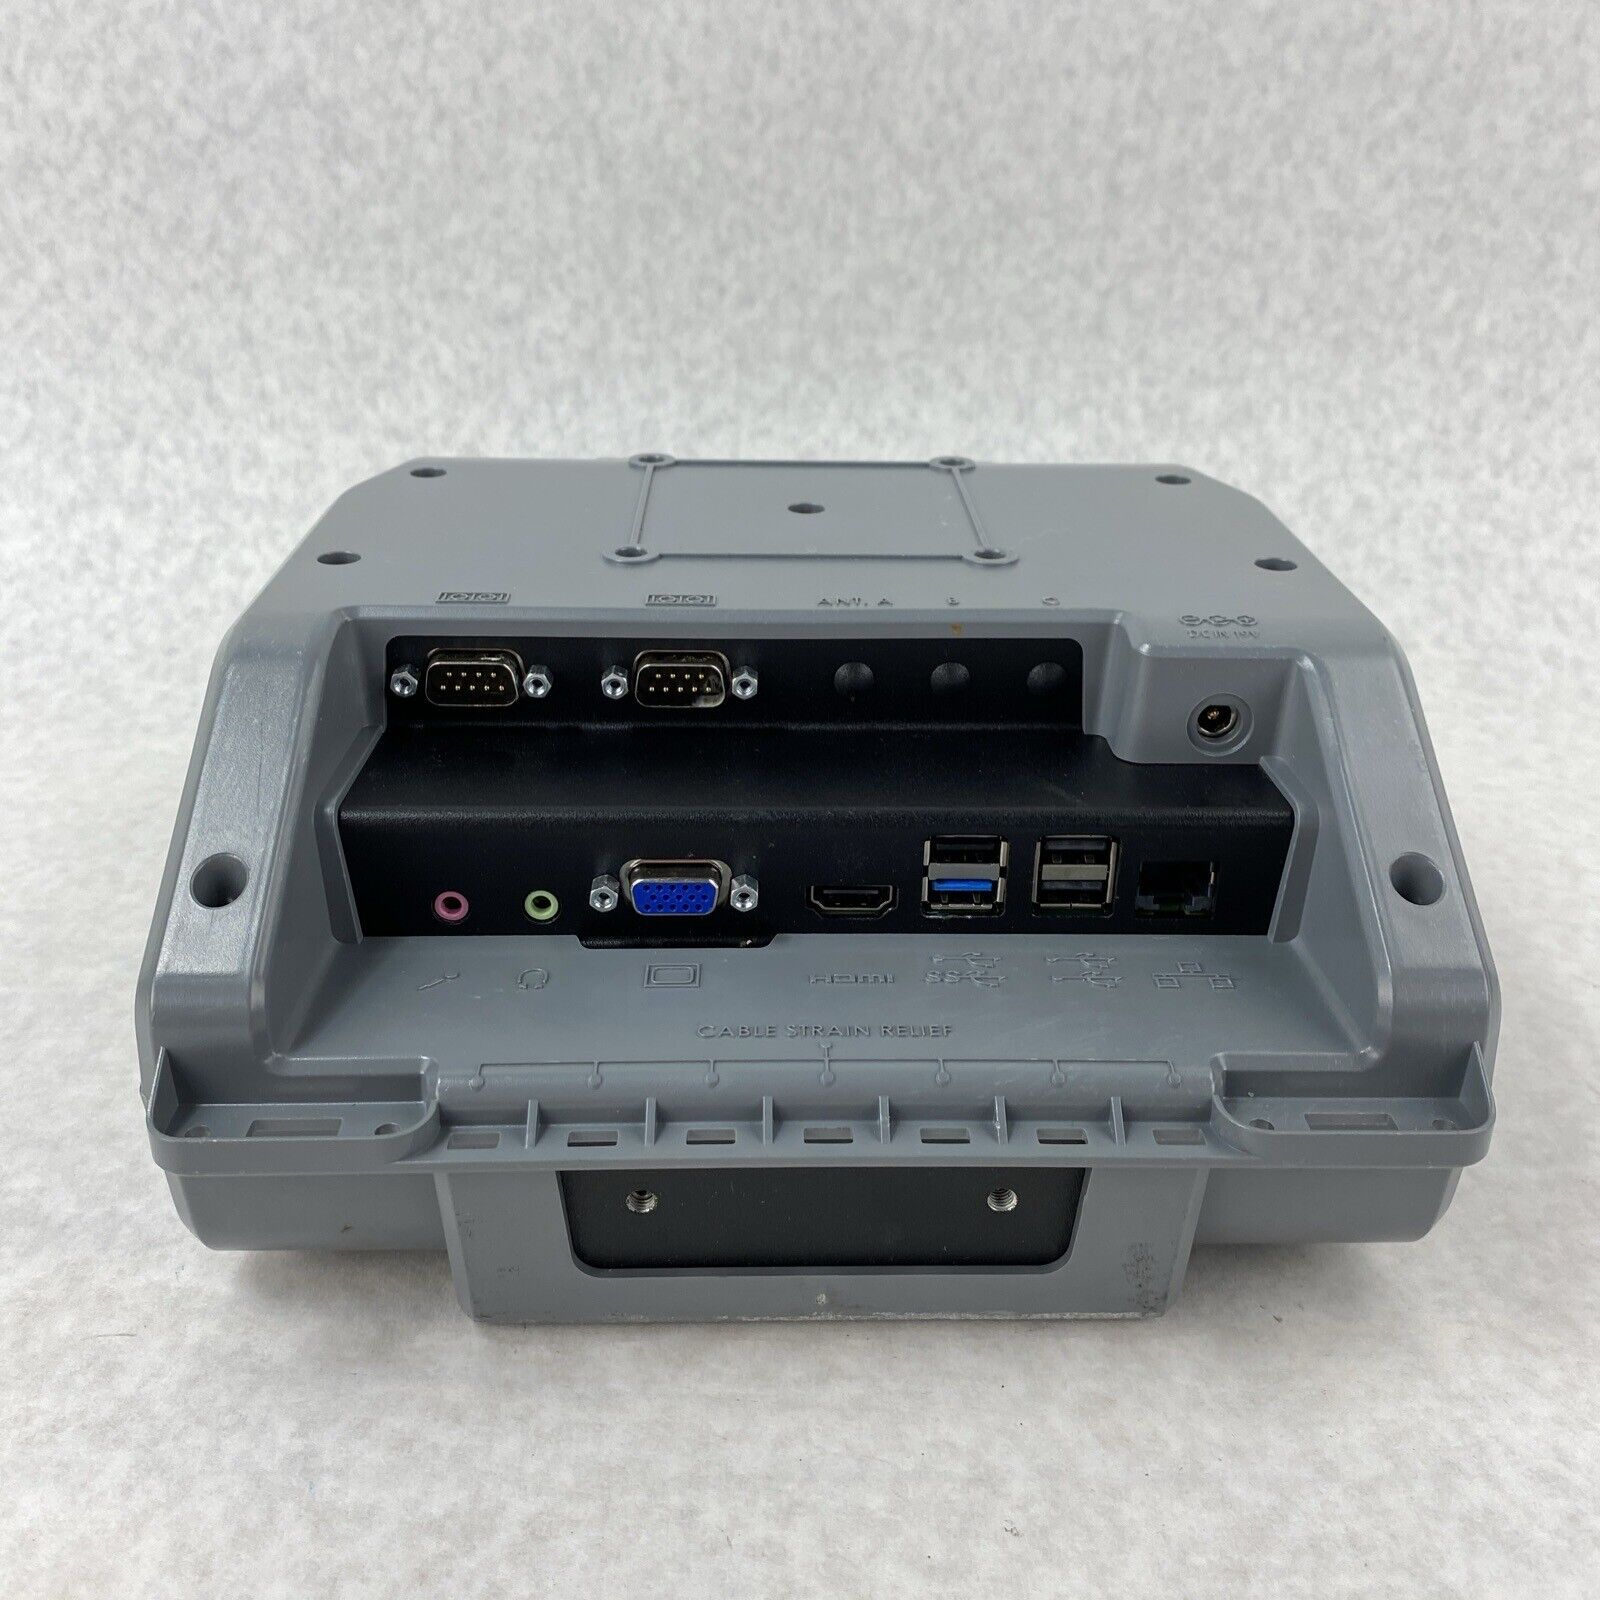 Havis DS-GTC-201 Docking Station For Getac F110 Tablet - Bad USB